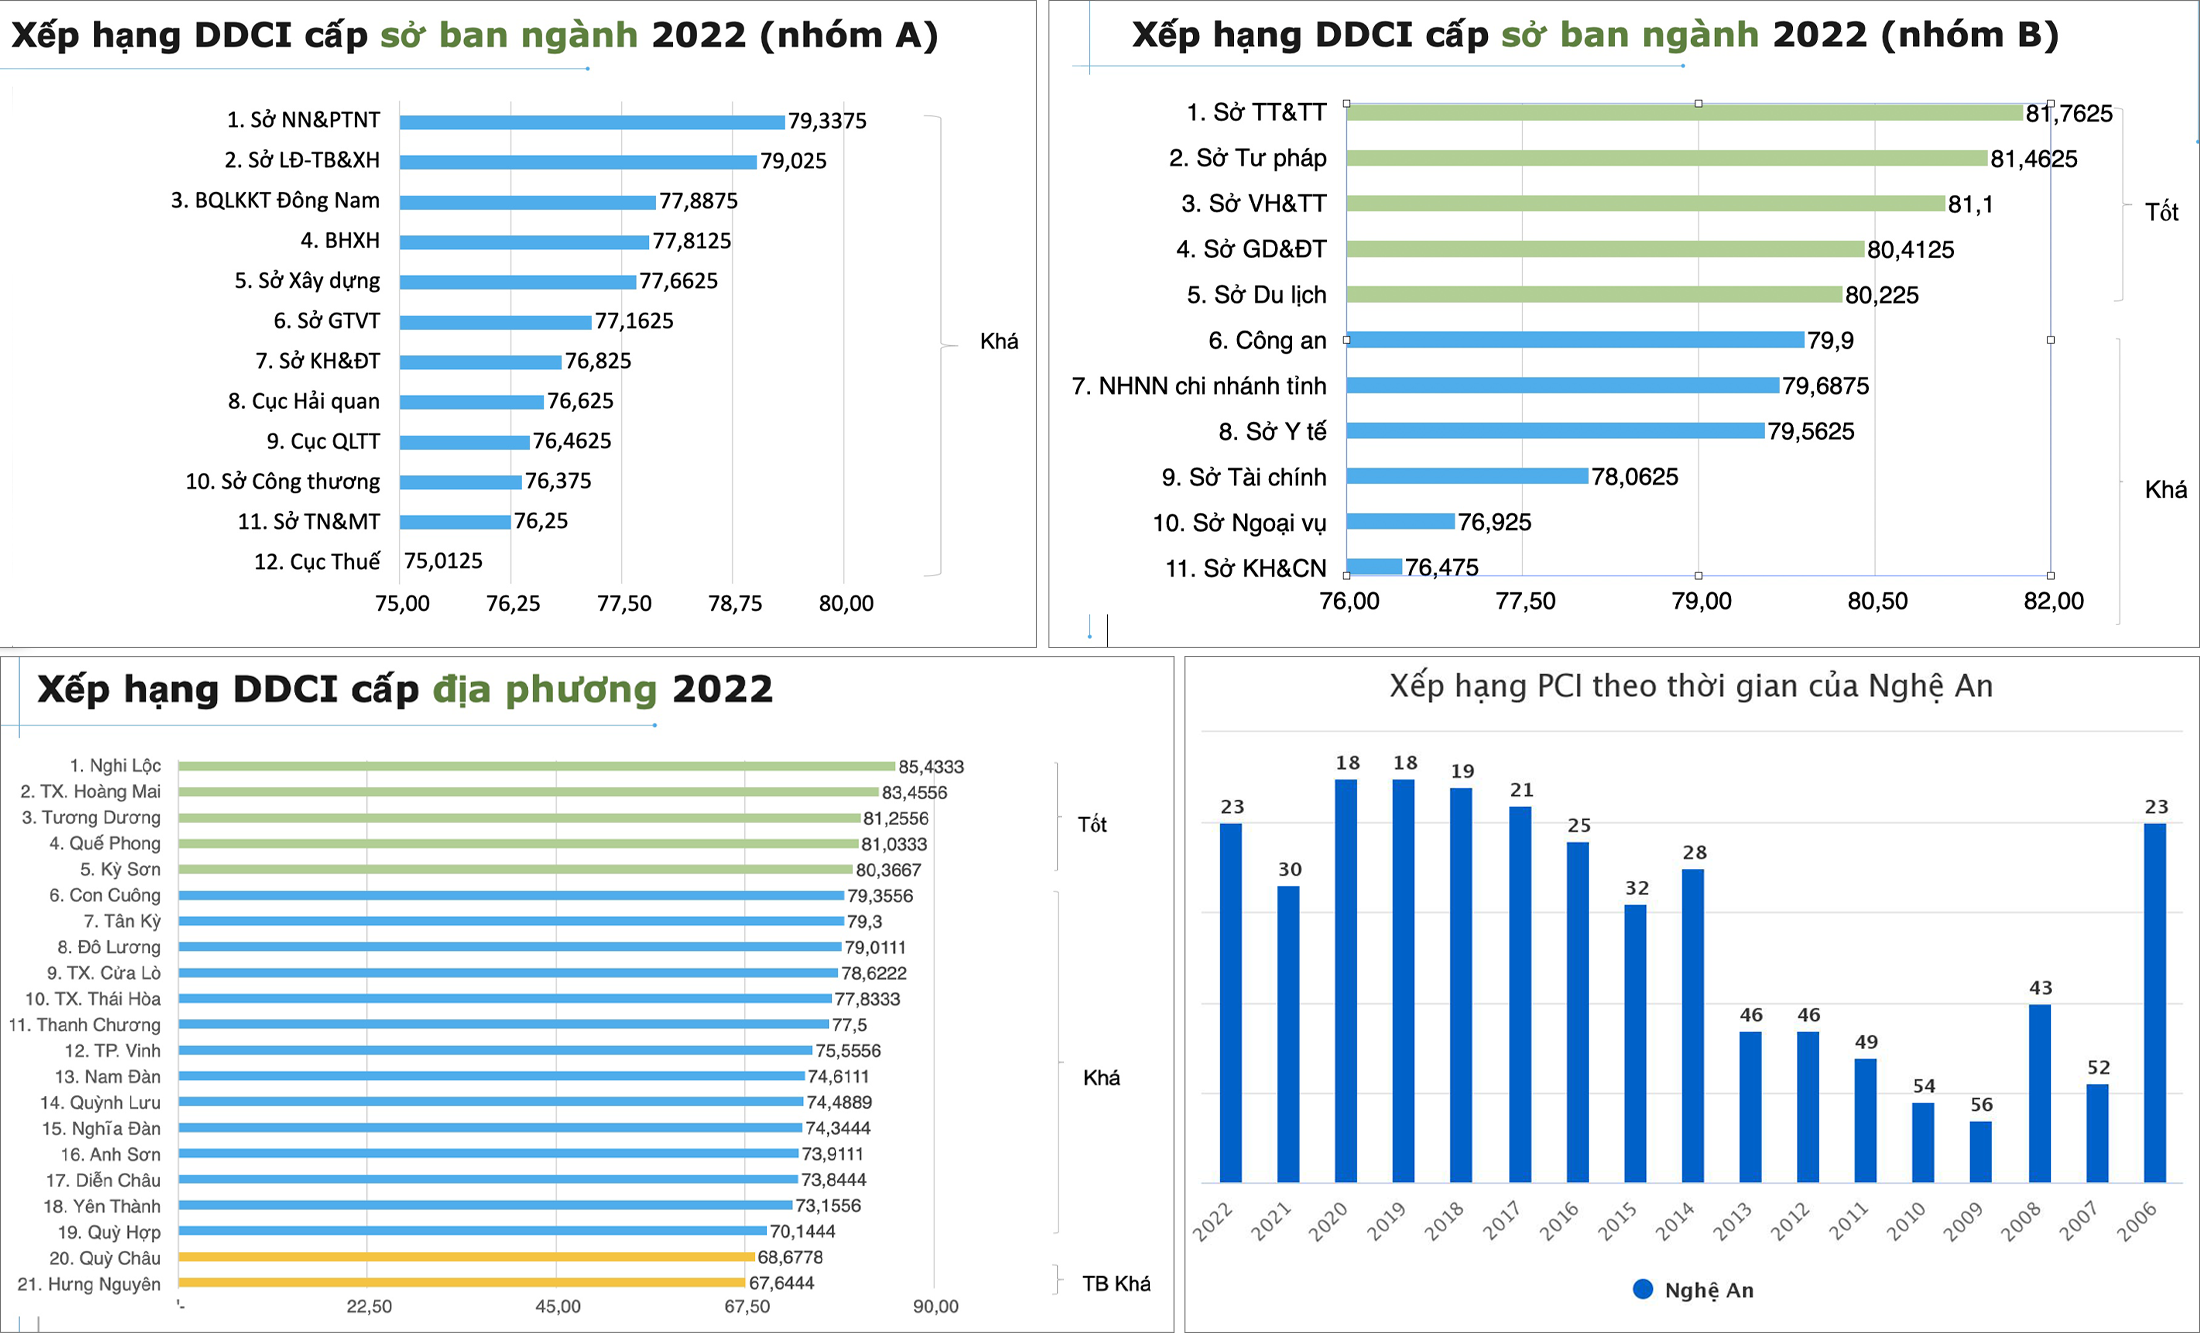 Bảng xếp hạng DDCI năm 2022 của các sở, ban, ngành, địa  phương và xếp hạng PCI của Nghệ An từ 2006 - 2022.